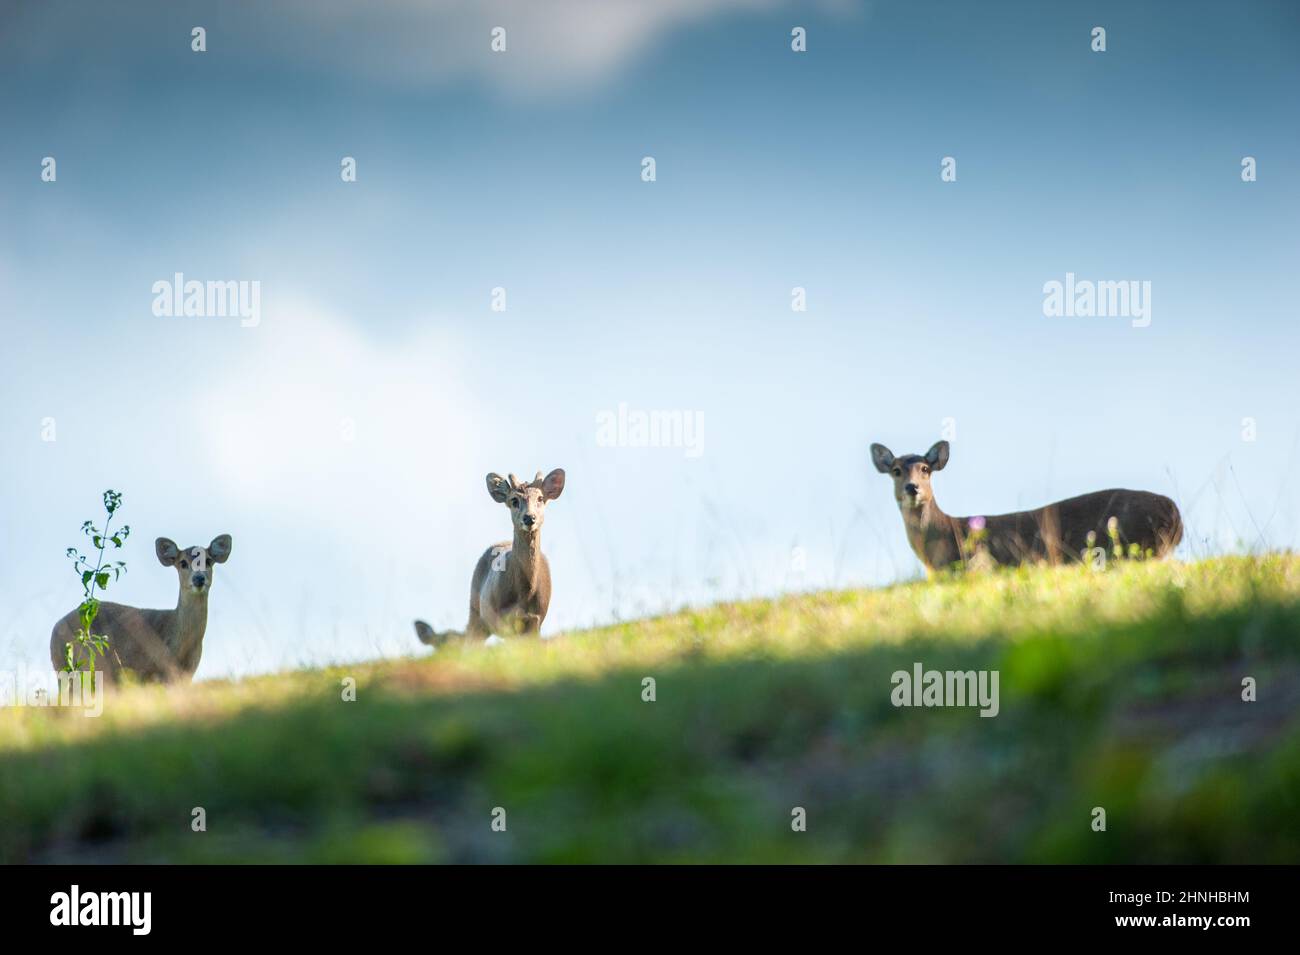 Un troupeau de cerfs de Hog tombe sur la prairie sur la colline, les nuages, et le ciel bleu en arrière-plan. Sanctuaire de la vie sauvage de Phukaew, Thaïlande. Banque D'Images